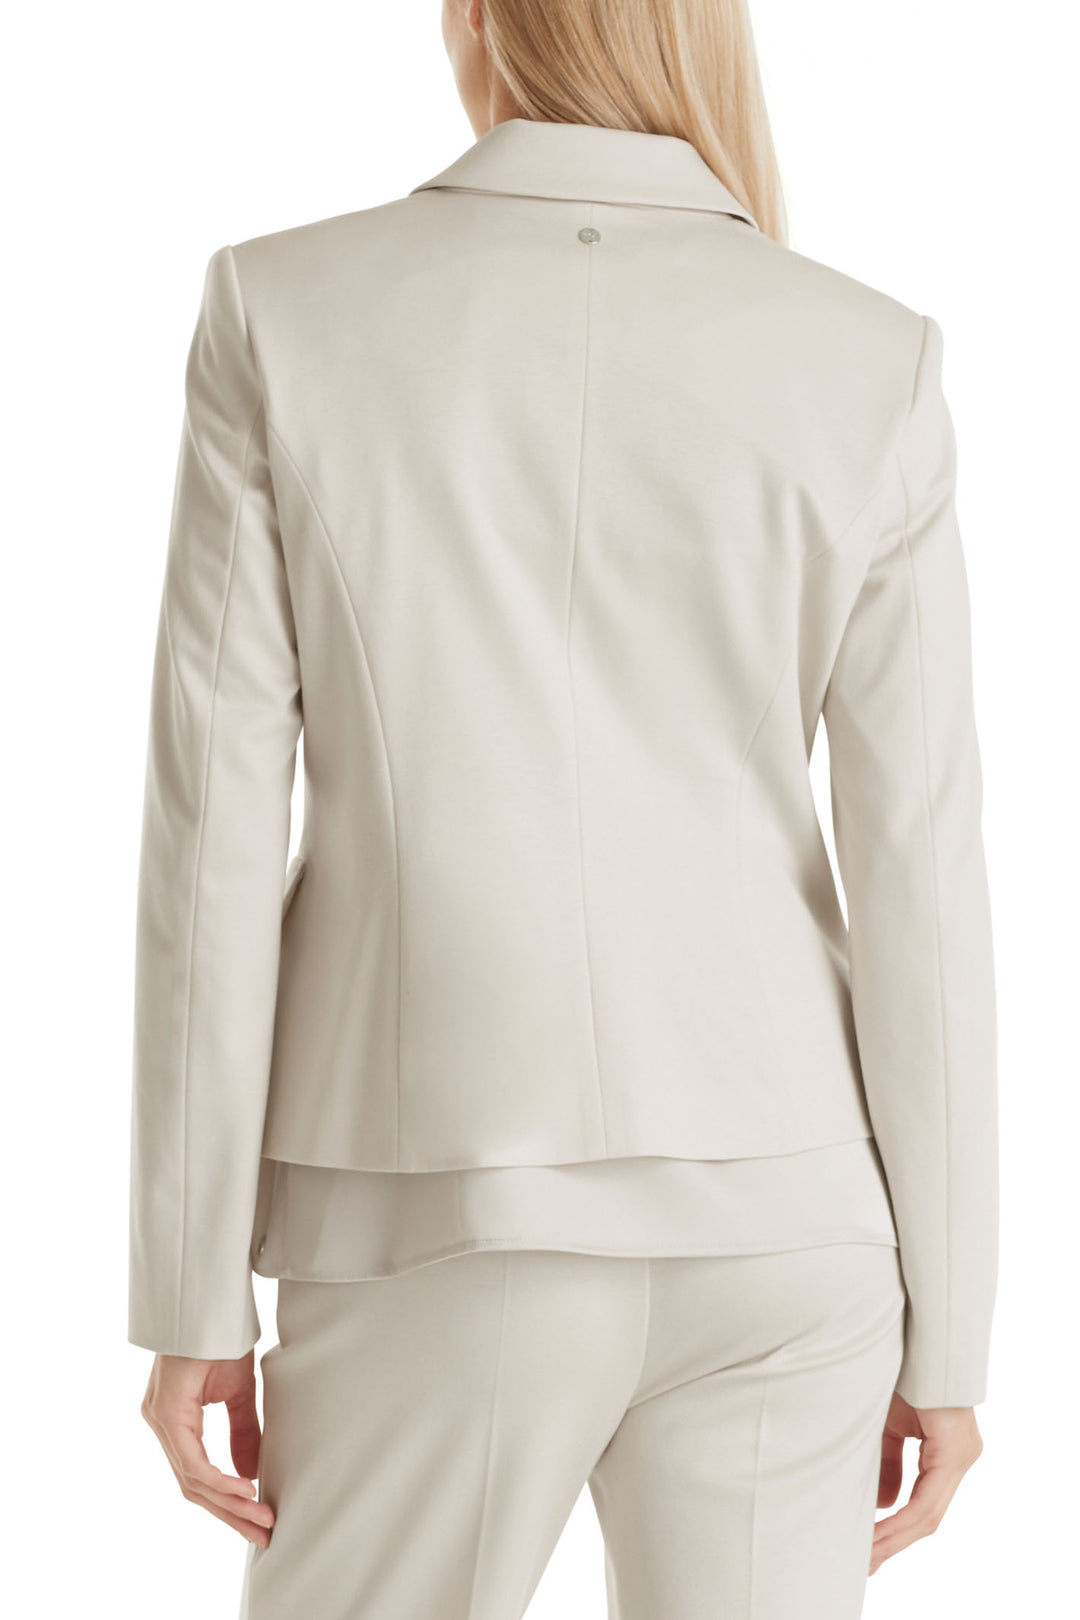 Marc Cain Additions WA 34.10 J24 182 Smoke Cream Jersey Jacket - Olivia Grace Fashion